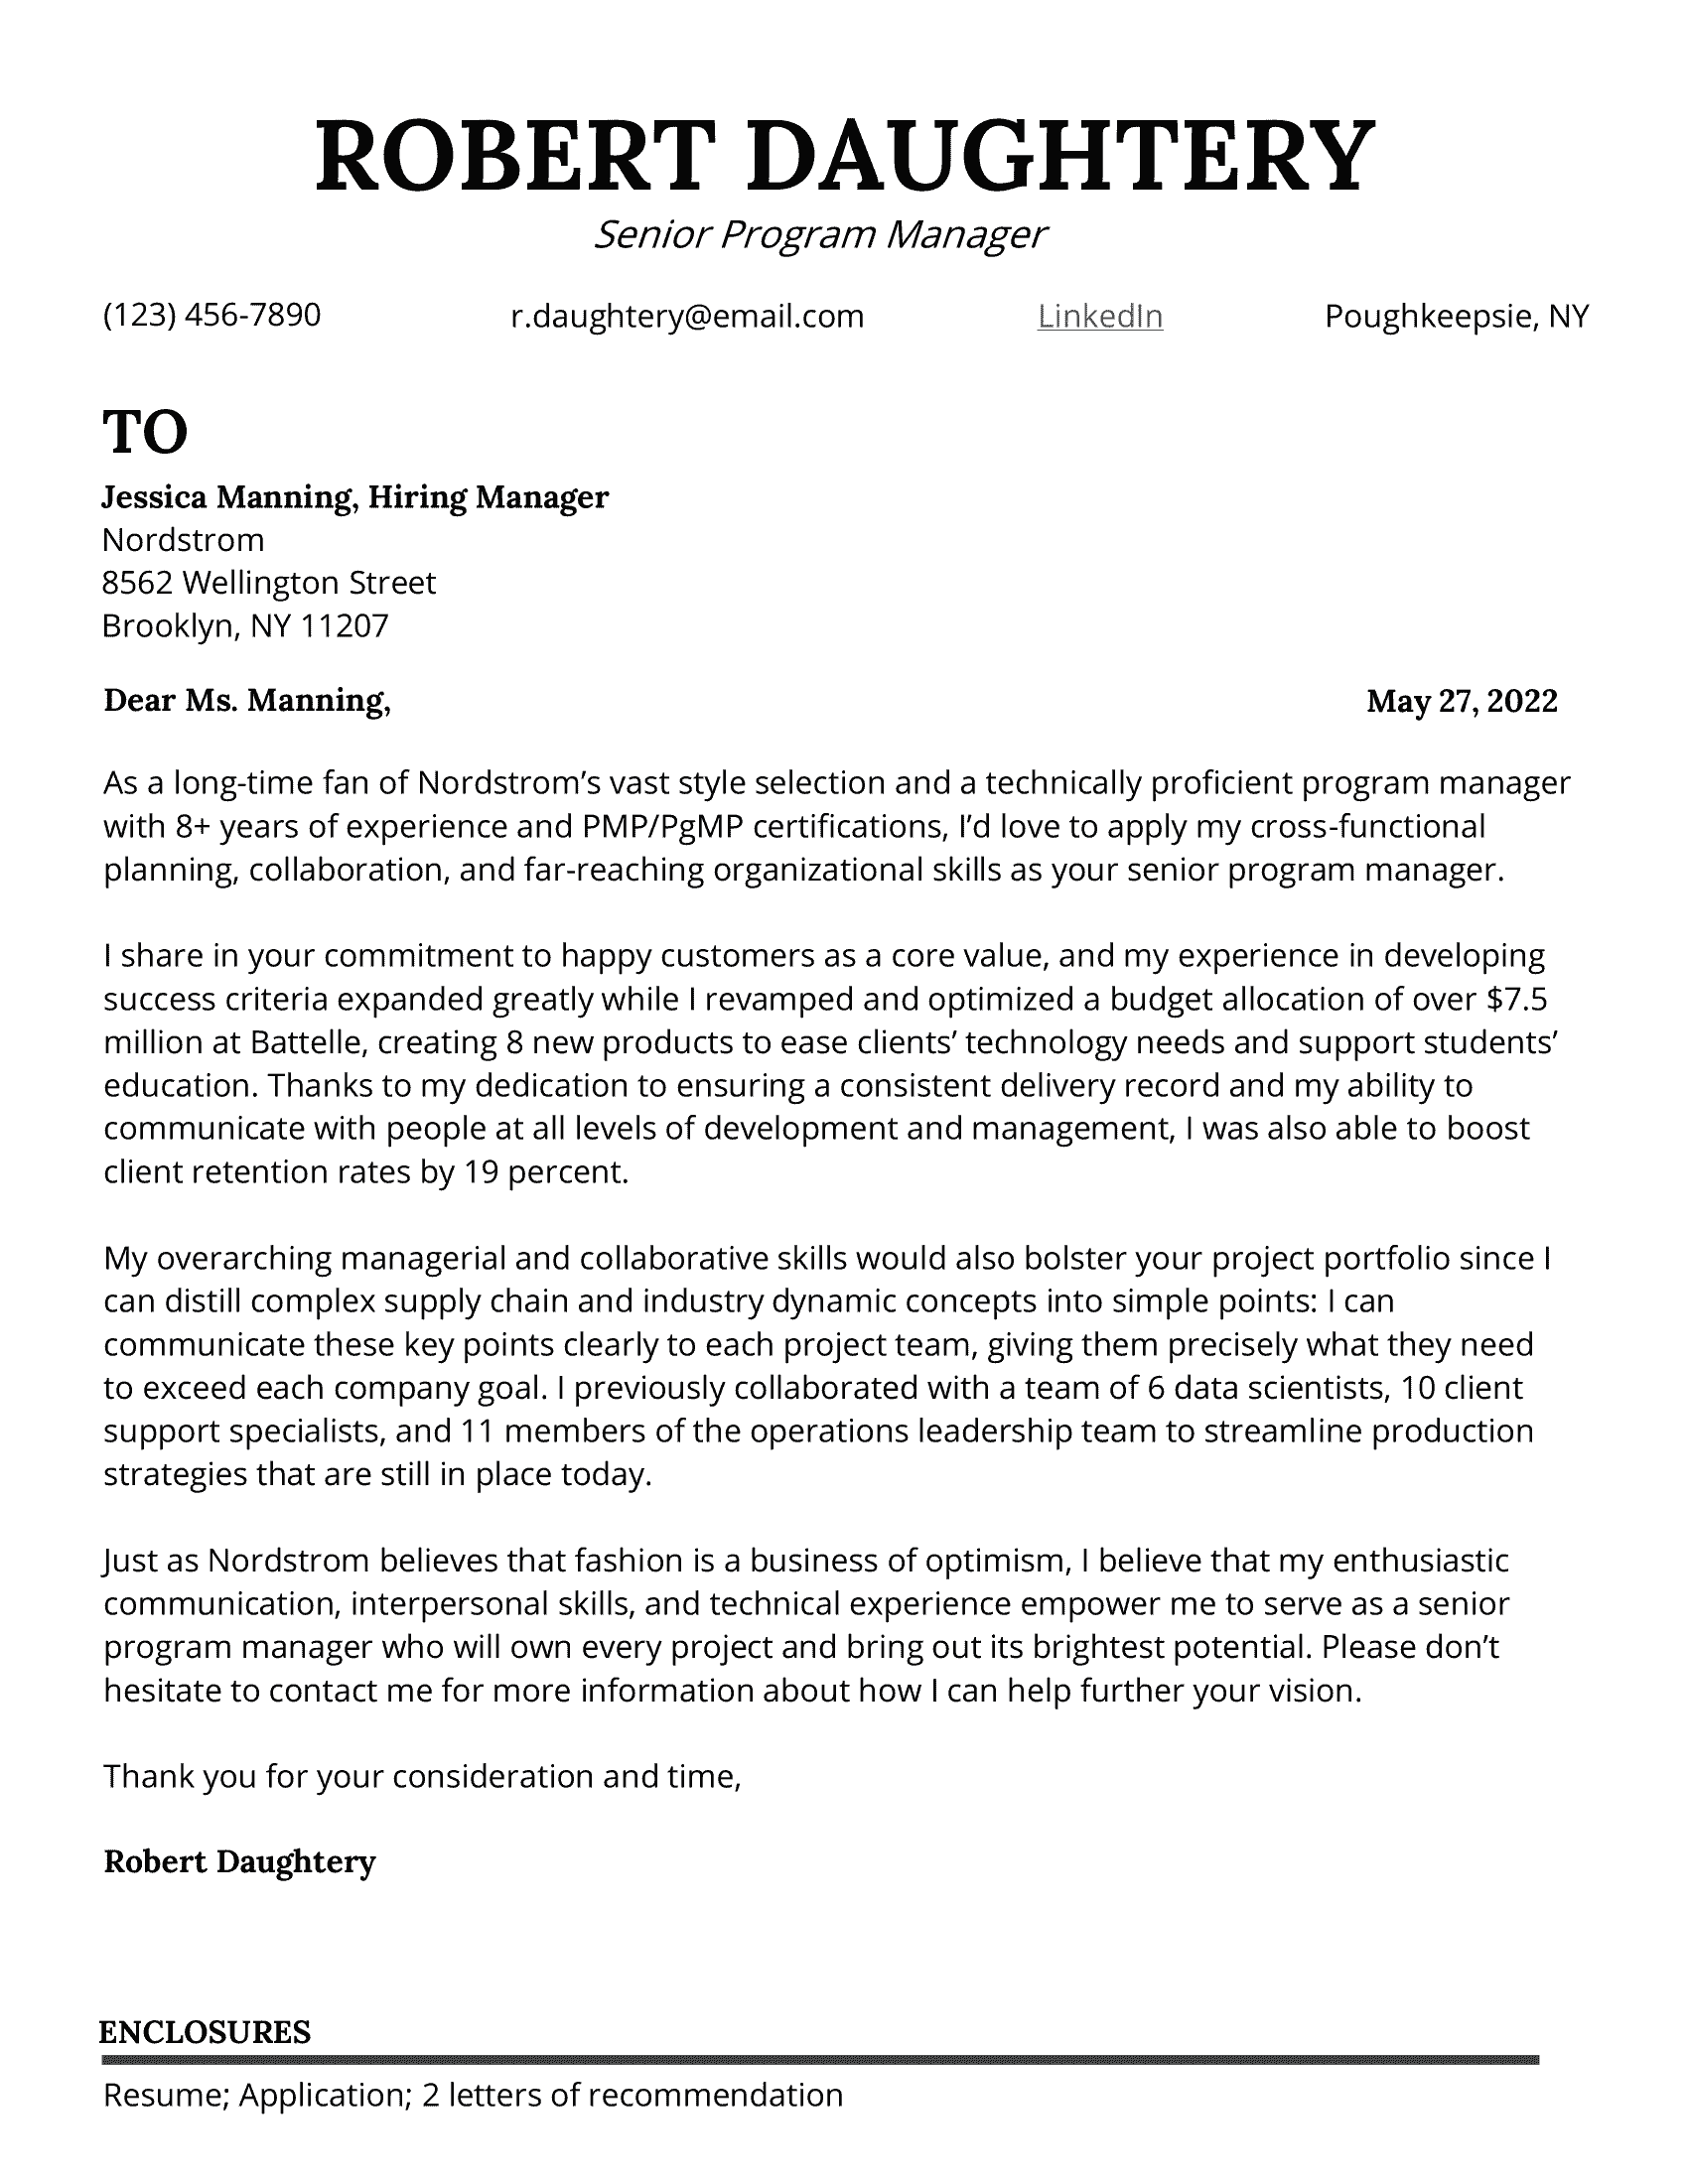 Senior program manager cover letter